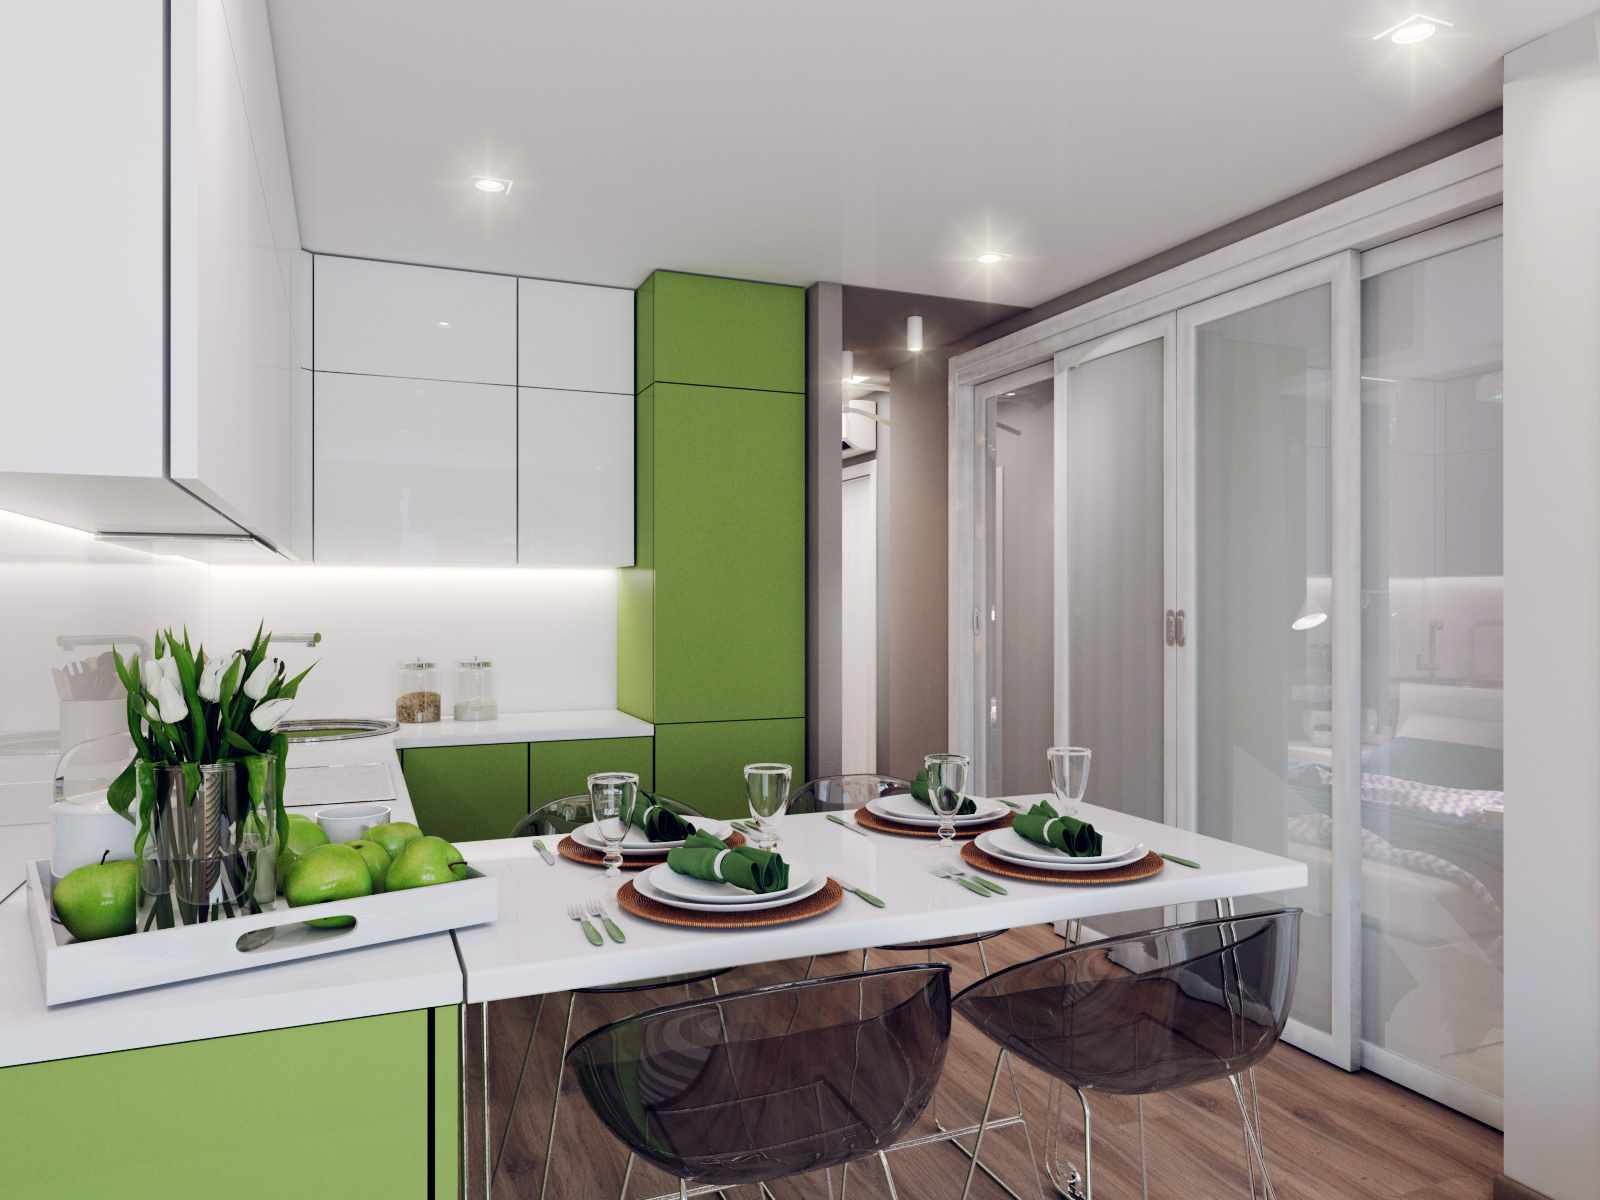 فكرة المطبخ غرفة المعيشة على غرار مشرق 16 متر مربع